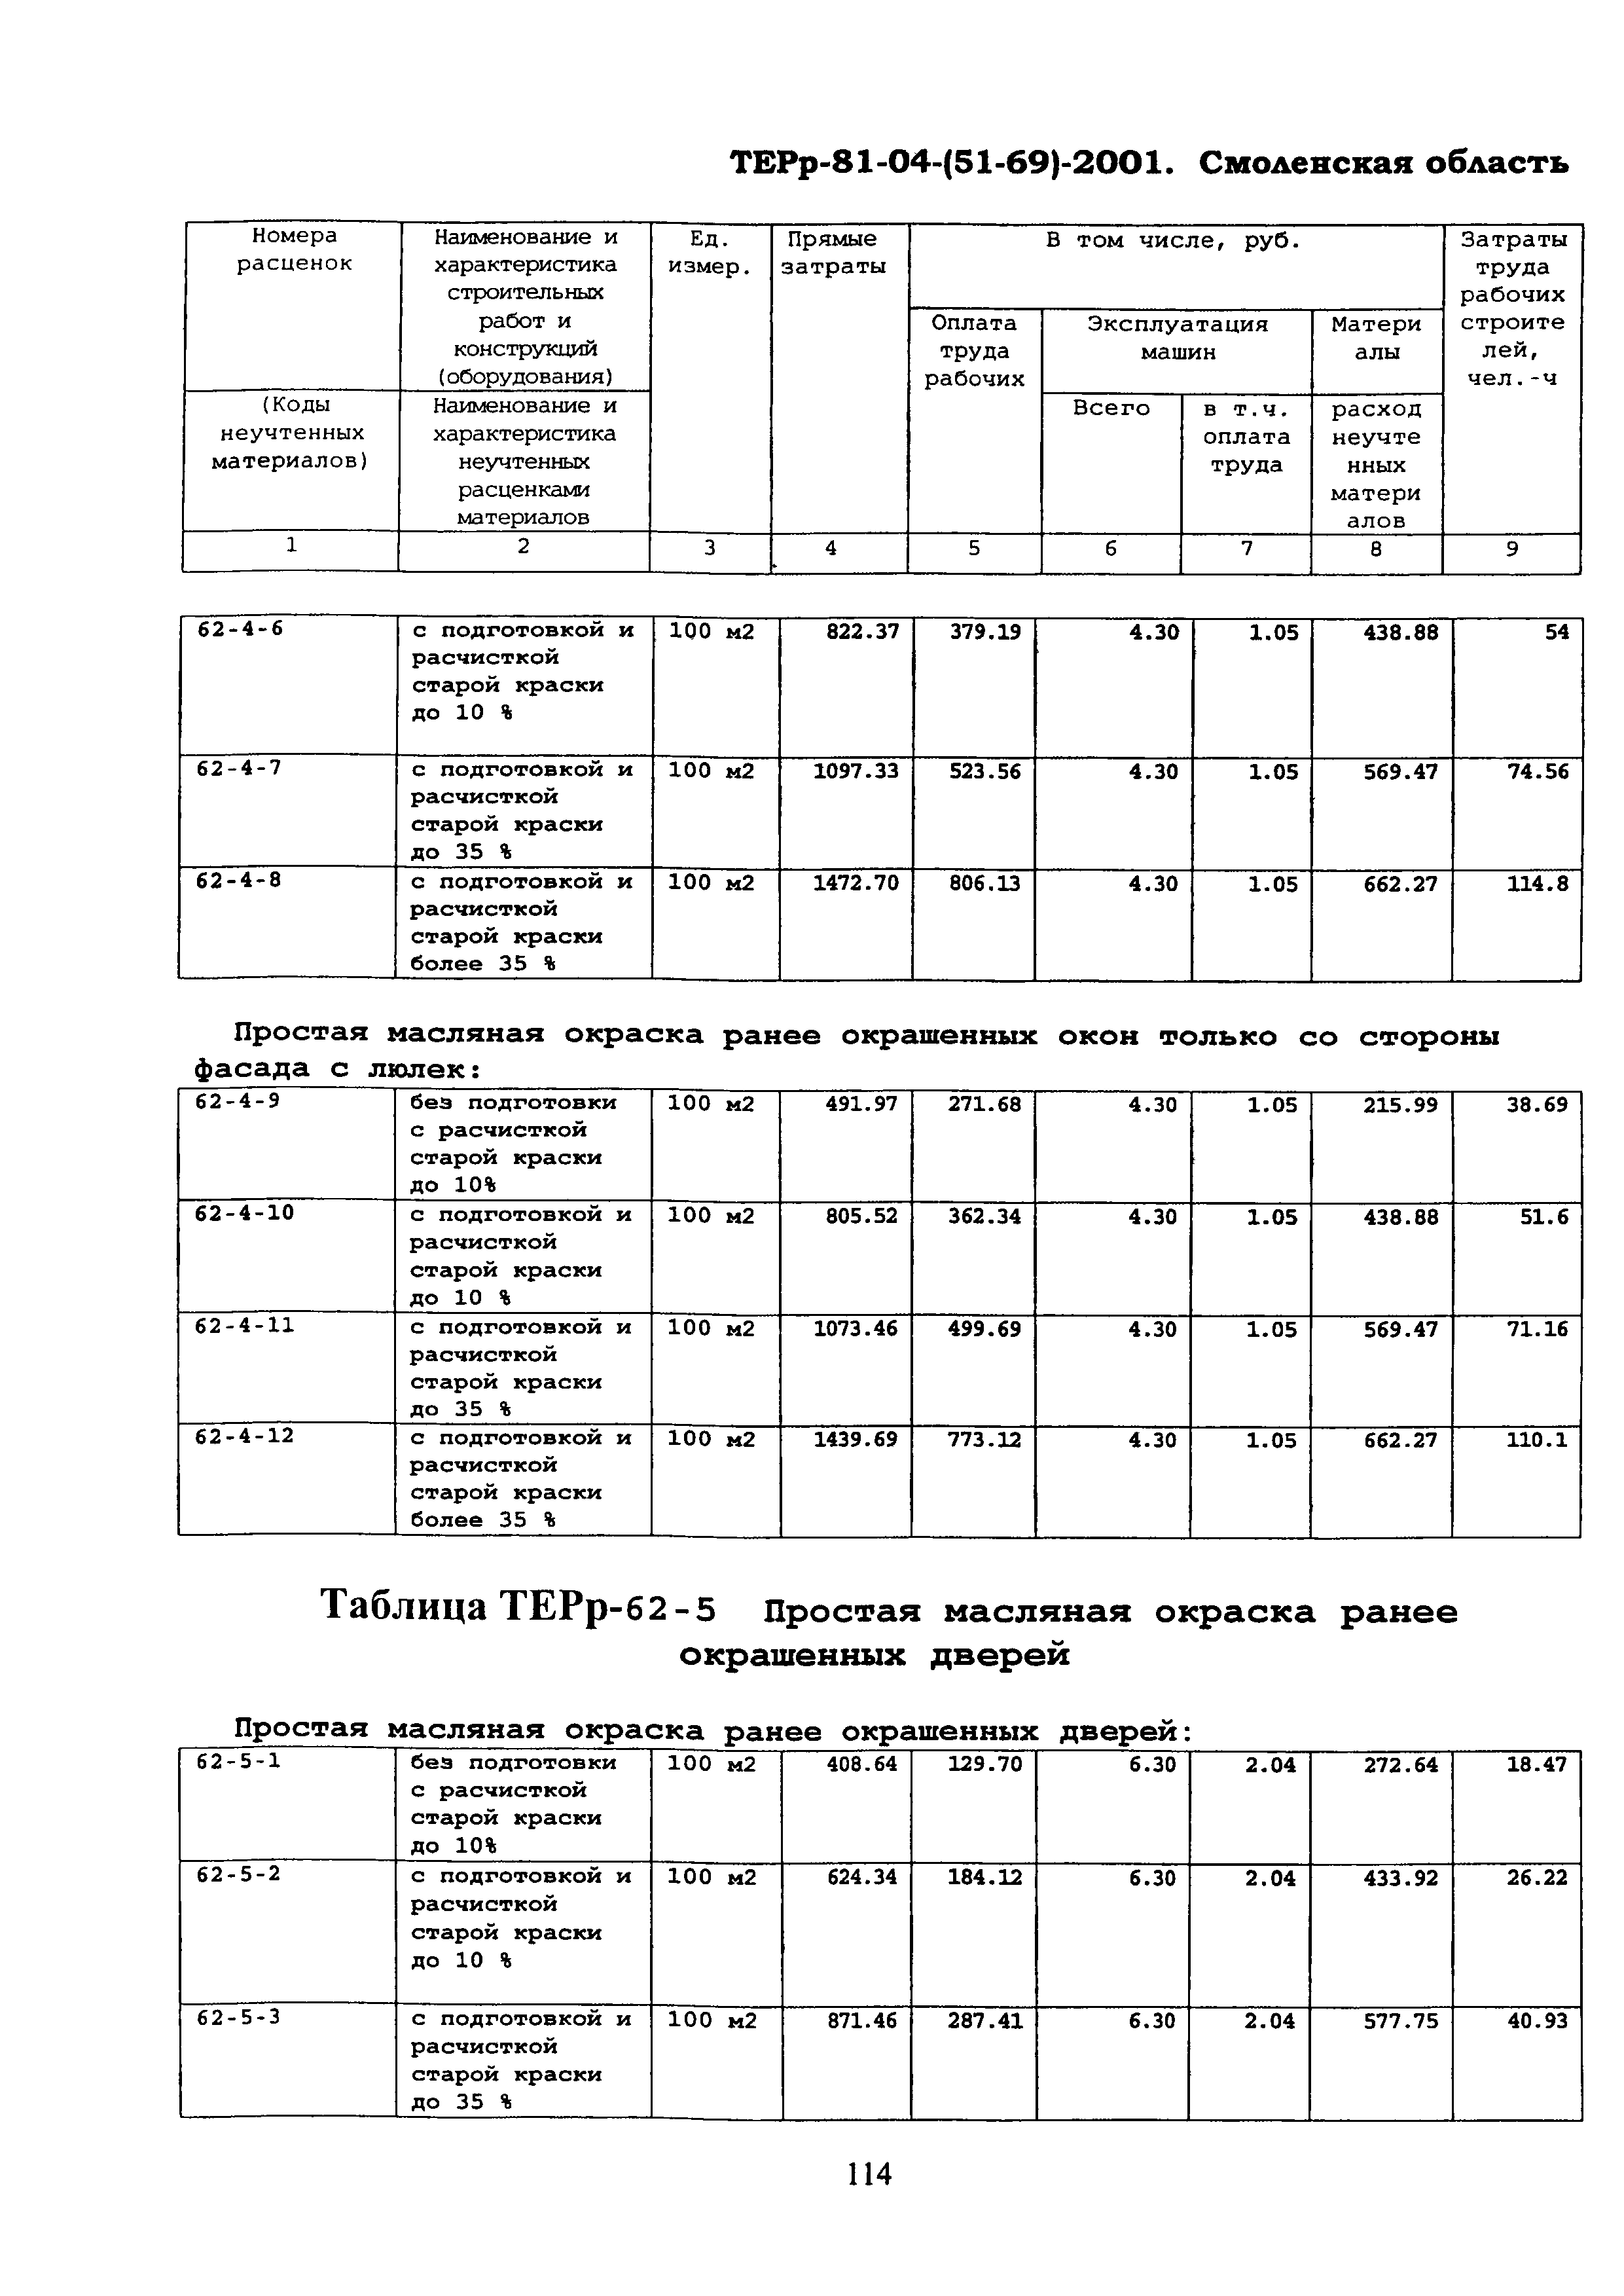 ТЕРр Смоленской области 2001-62